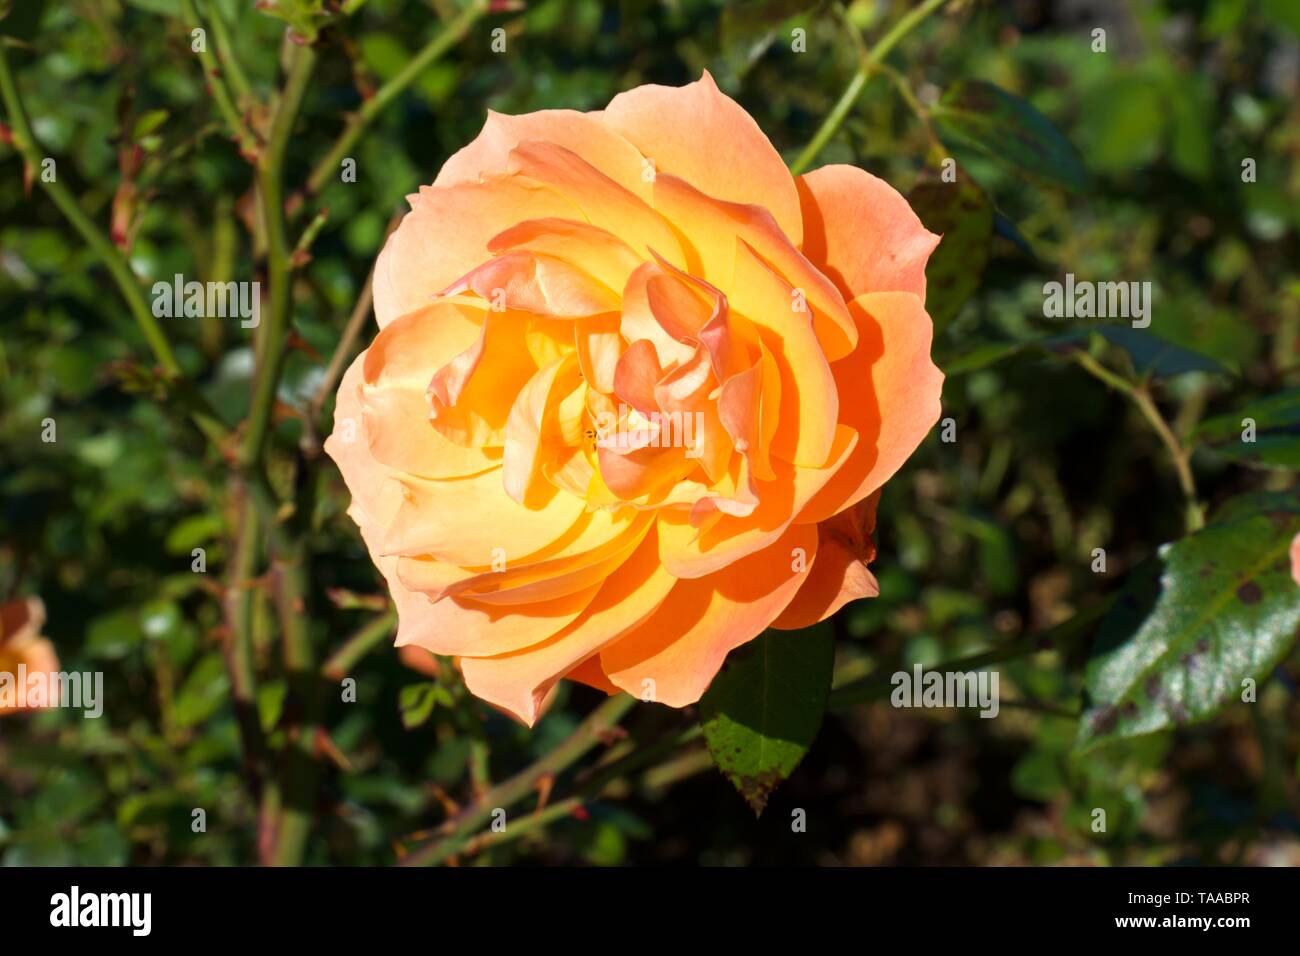 David Austin English Roses Lady of Shallot, against green bushes background Stock Photo